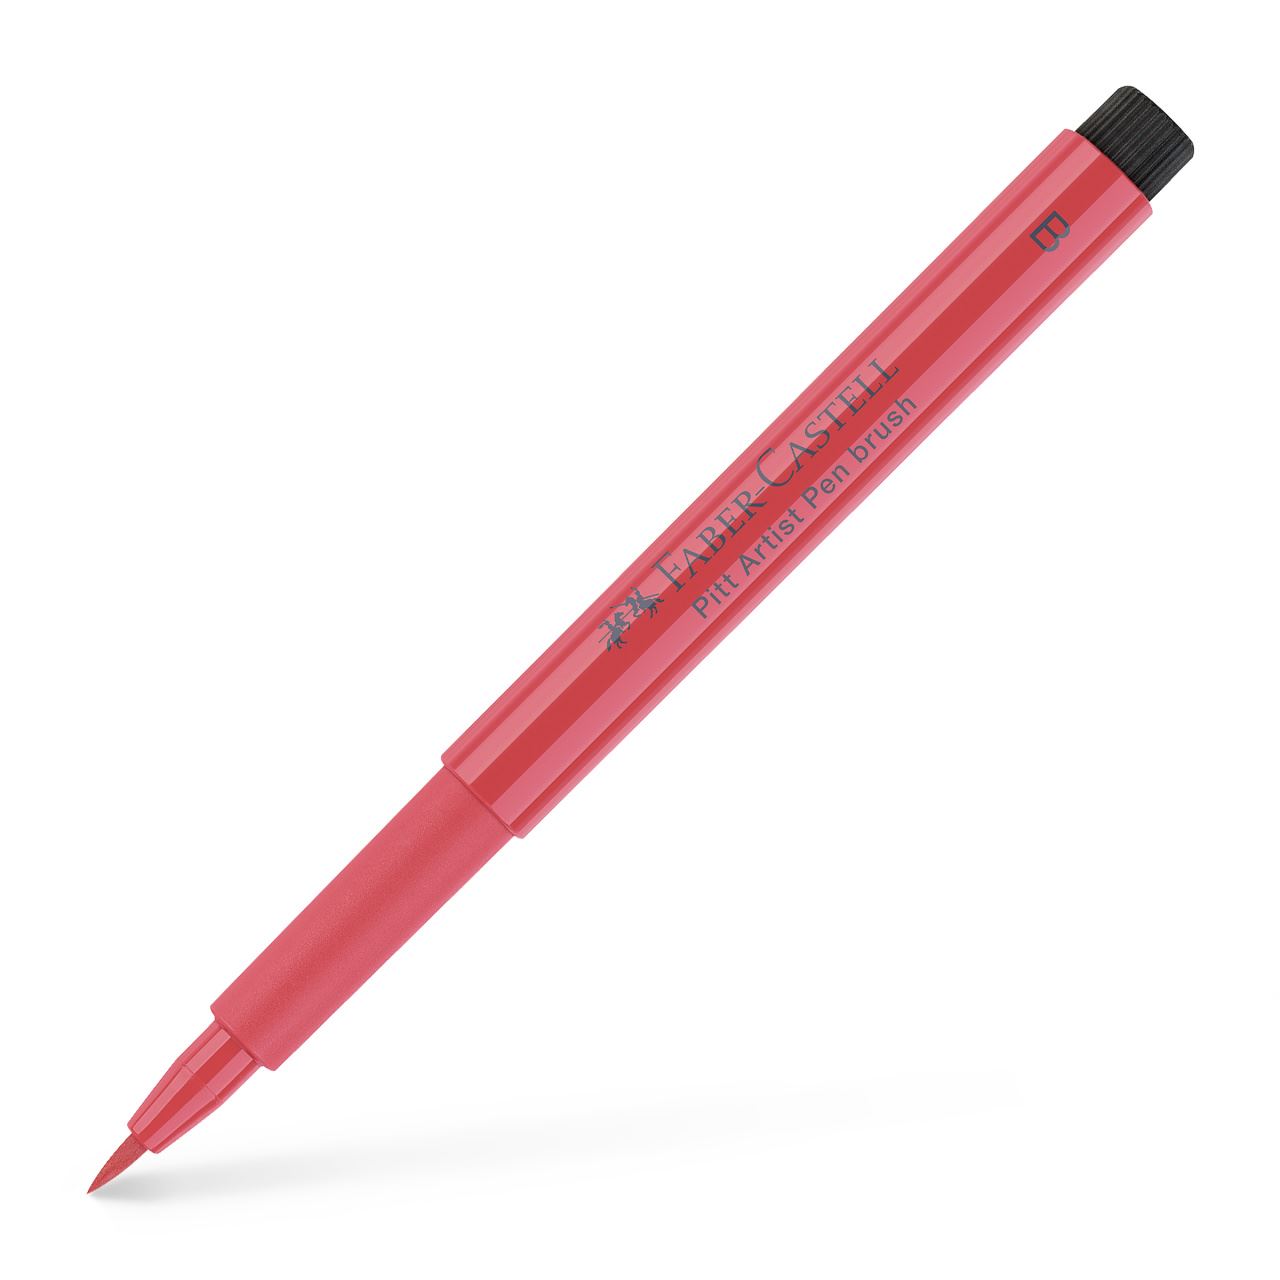 Faber-Castell - Feutre Pitt Artist Pen Brush rouge profond